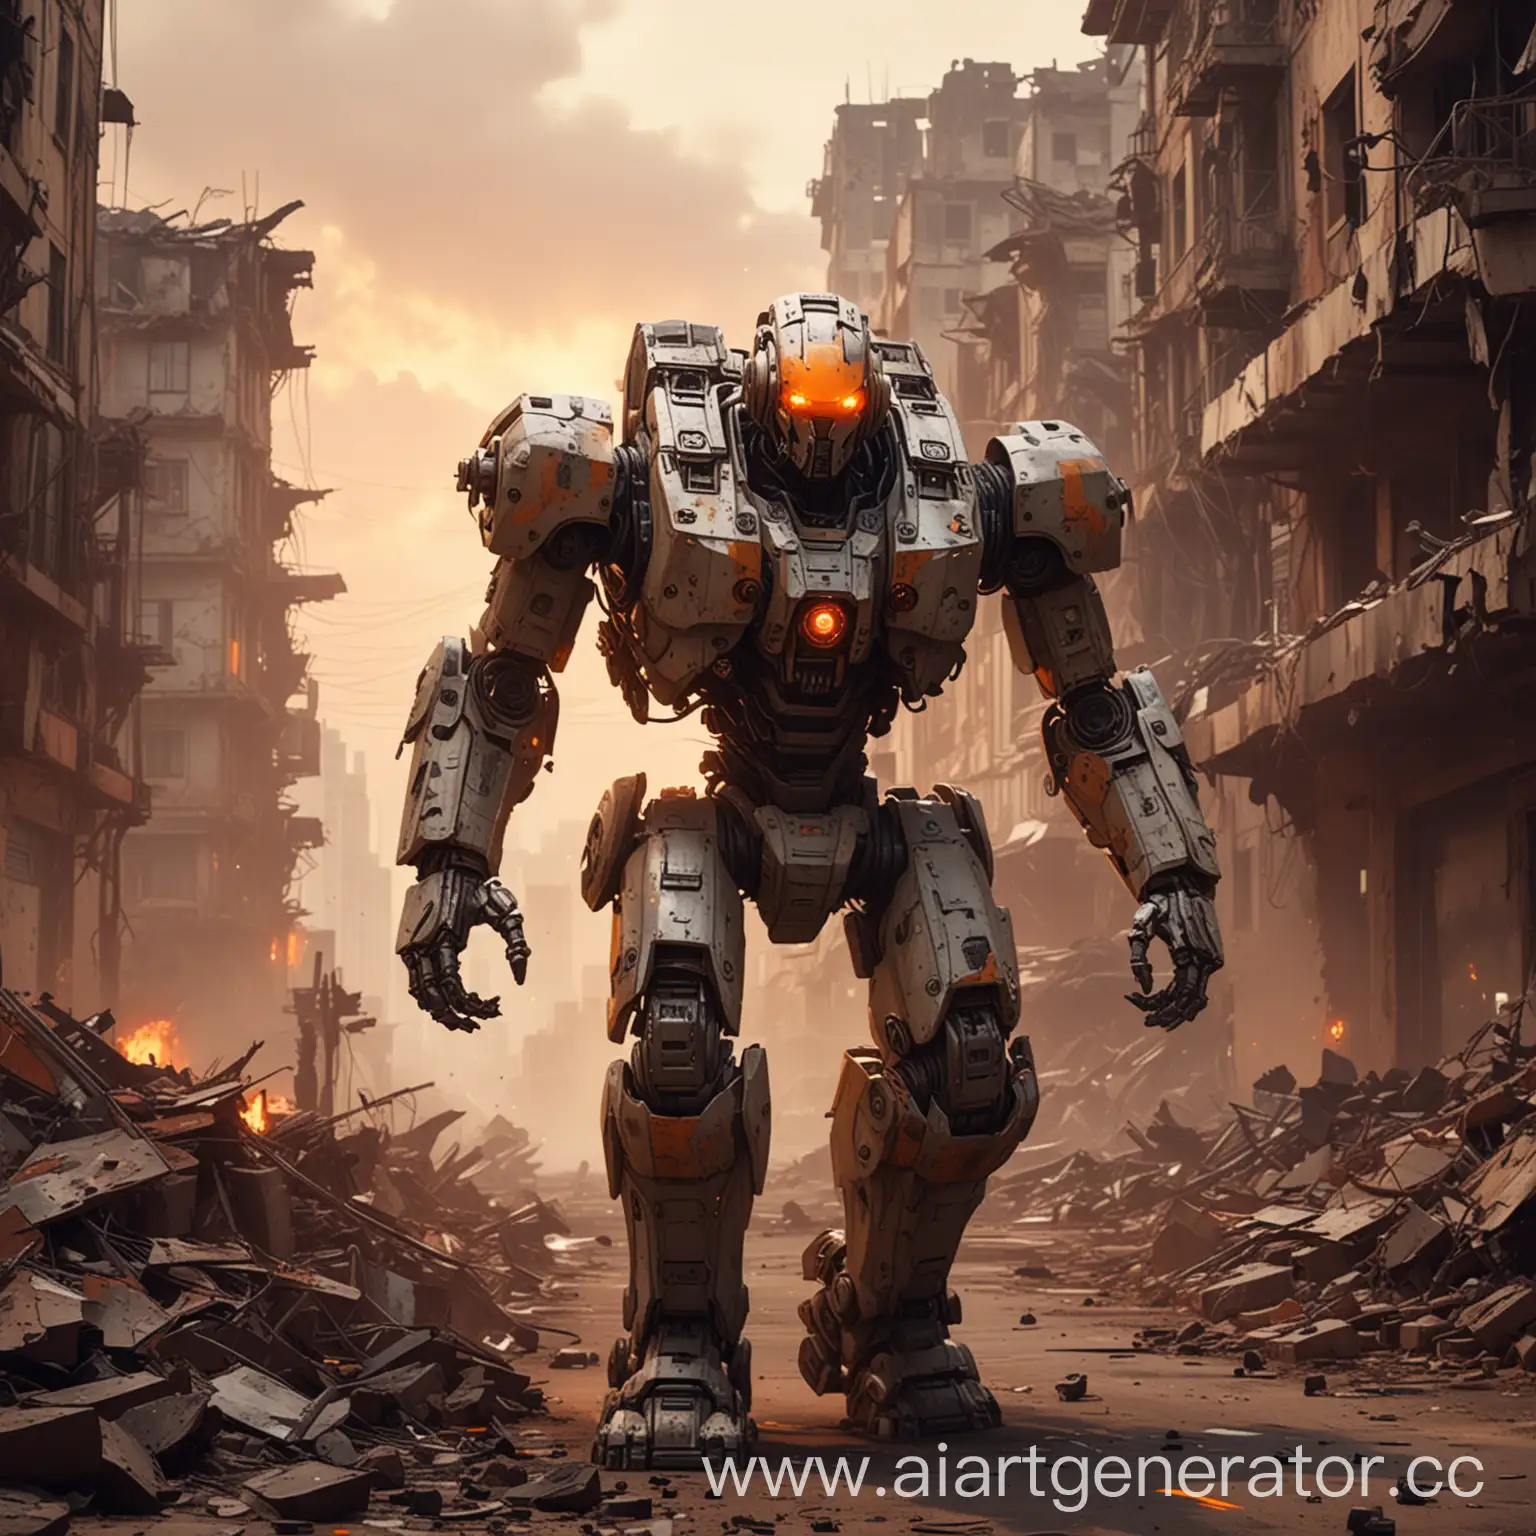 Огромный Робот-мех с горящими оранжевыми глазами идёт маниакально улыбаясь, за собой тащит раненного солдата, фон сзади разрушенный город, красные оттенки